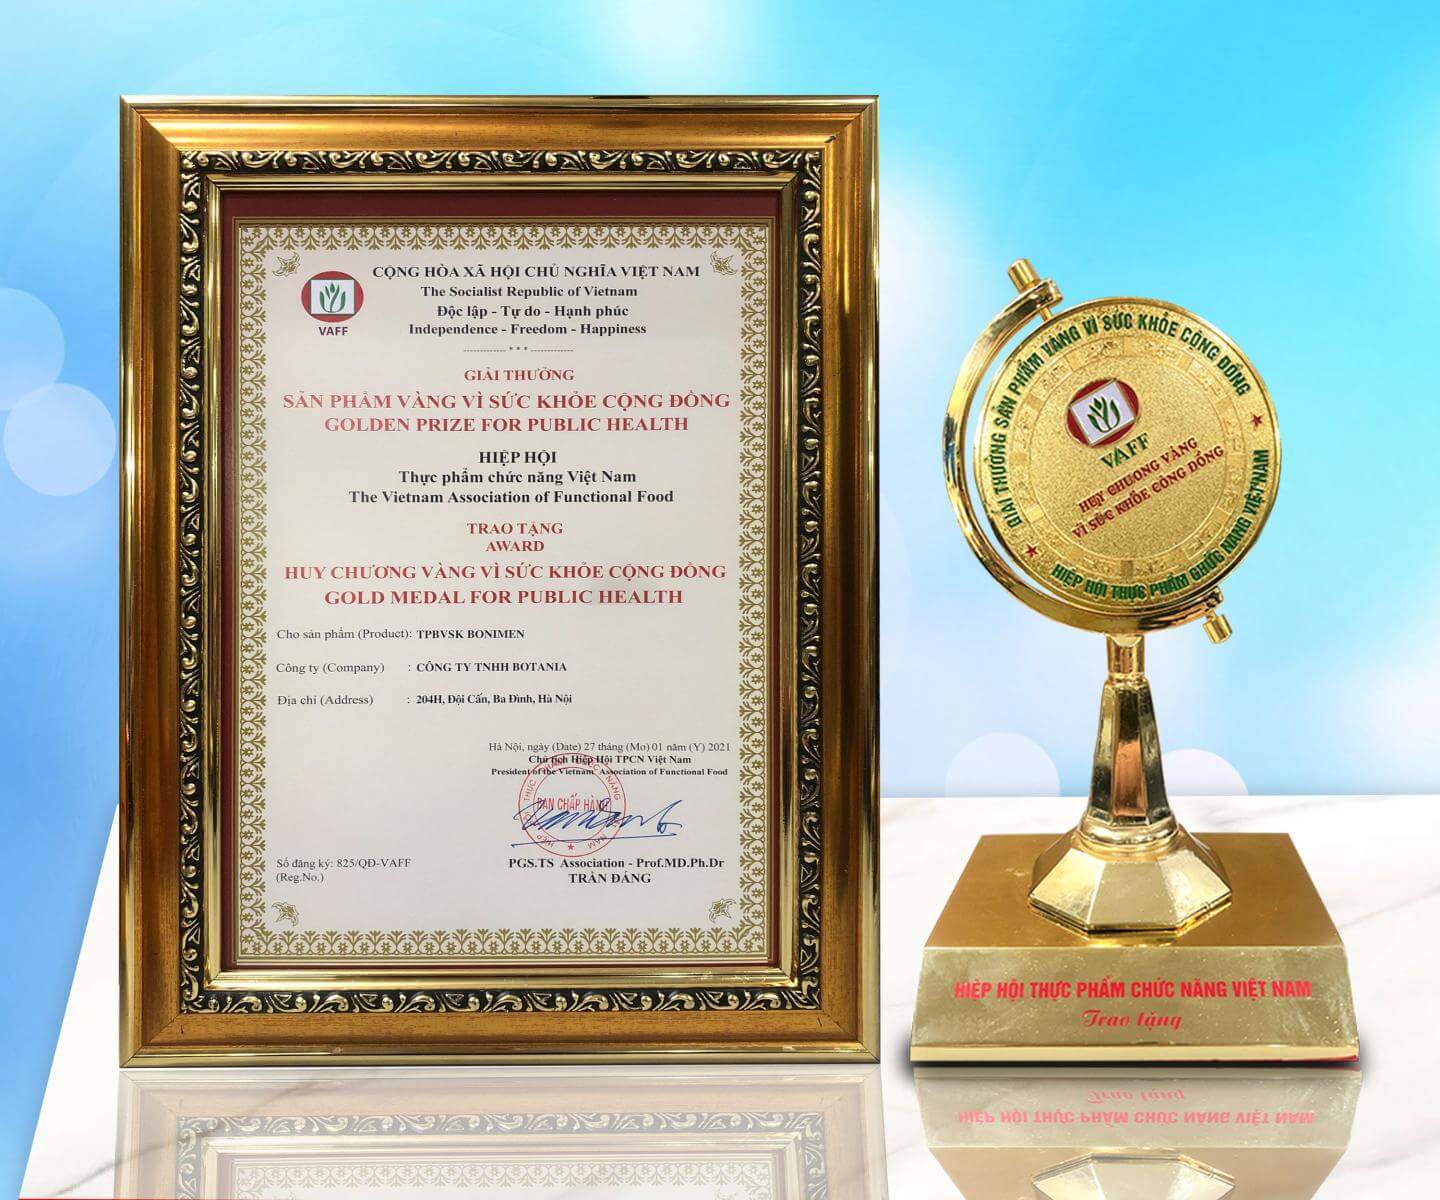 BoniMen đạt giải thưởng “Sản phẩm vàng vì sức khỏe cộng đồng”